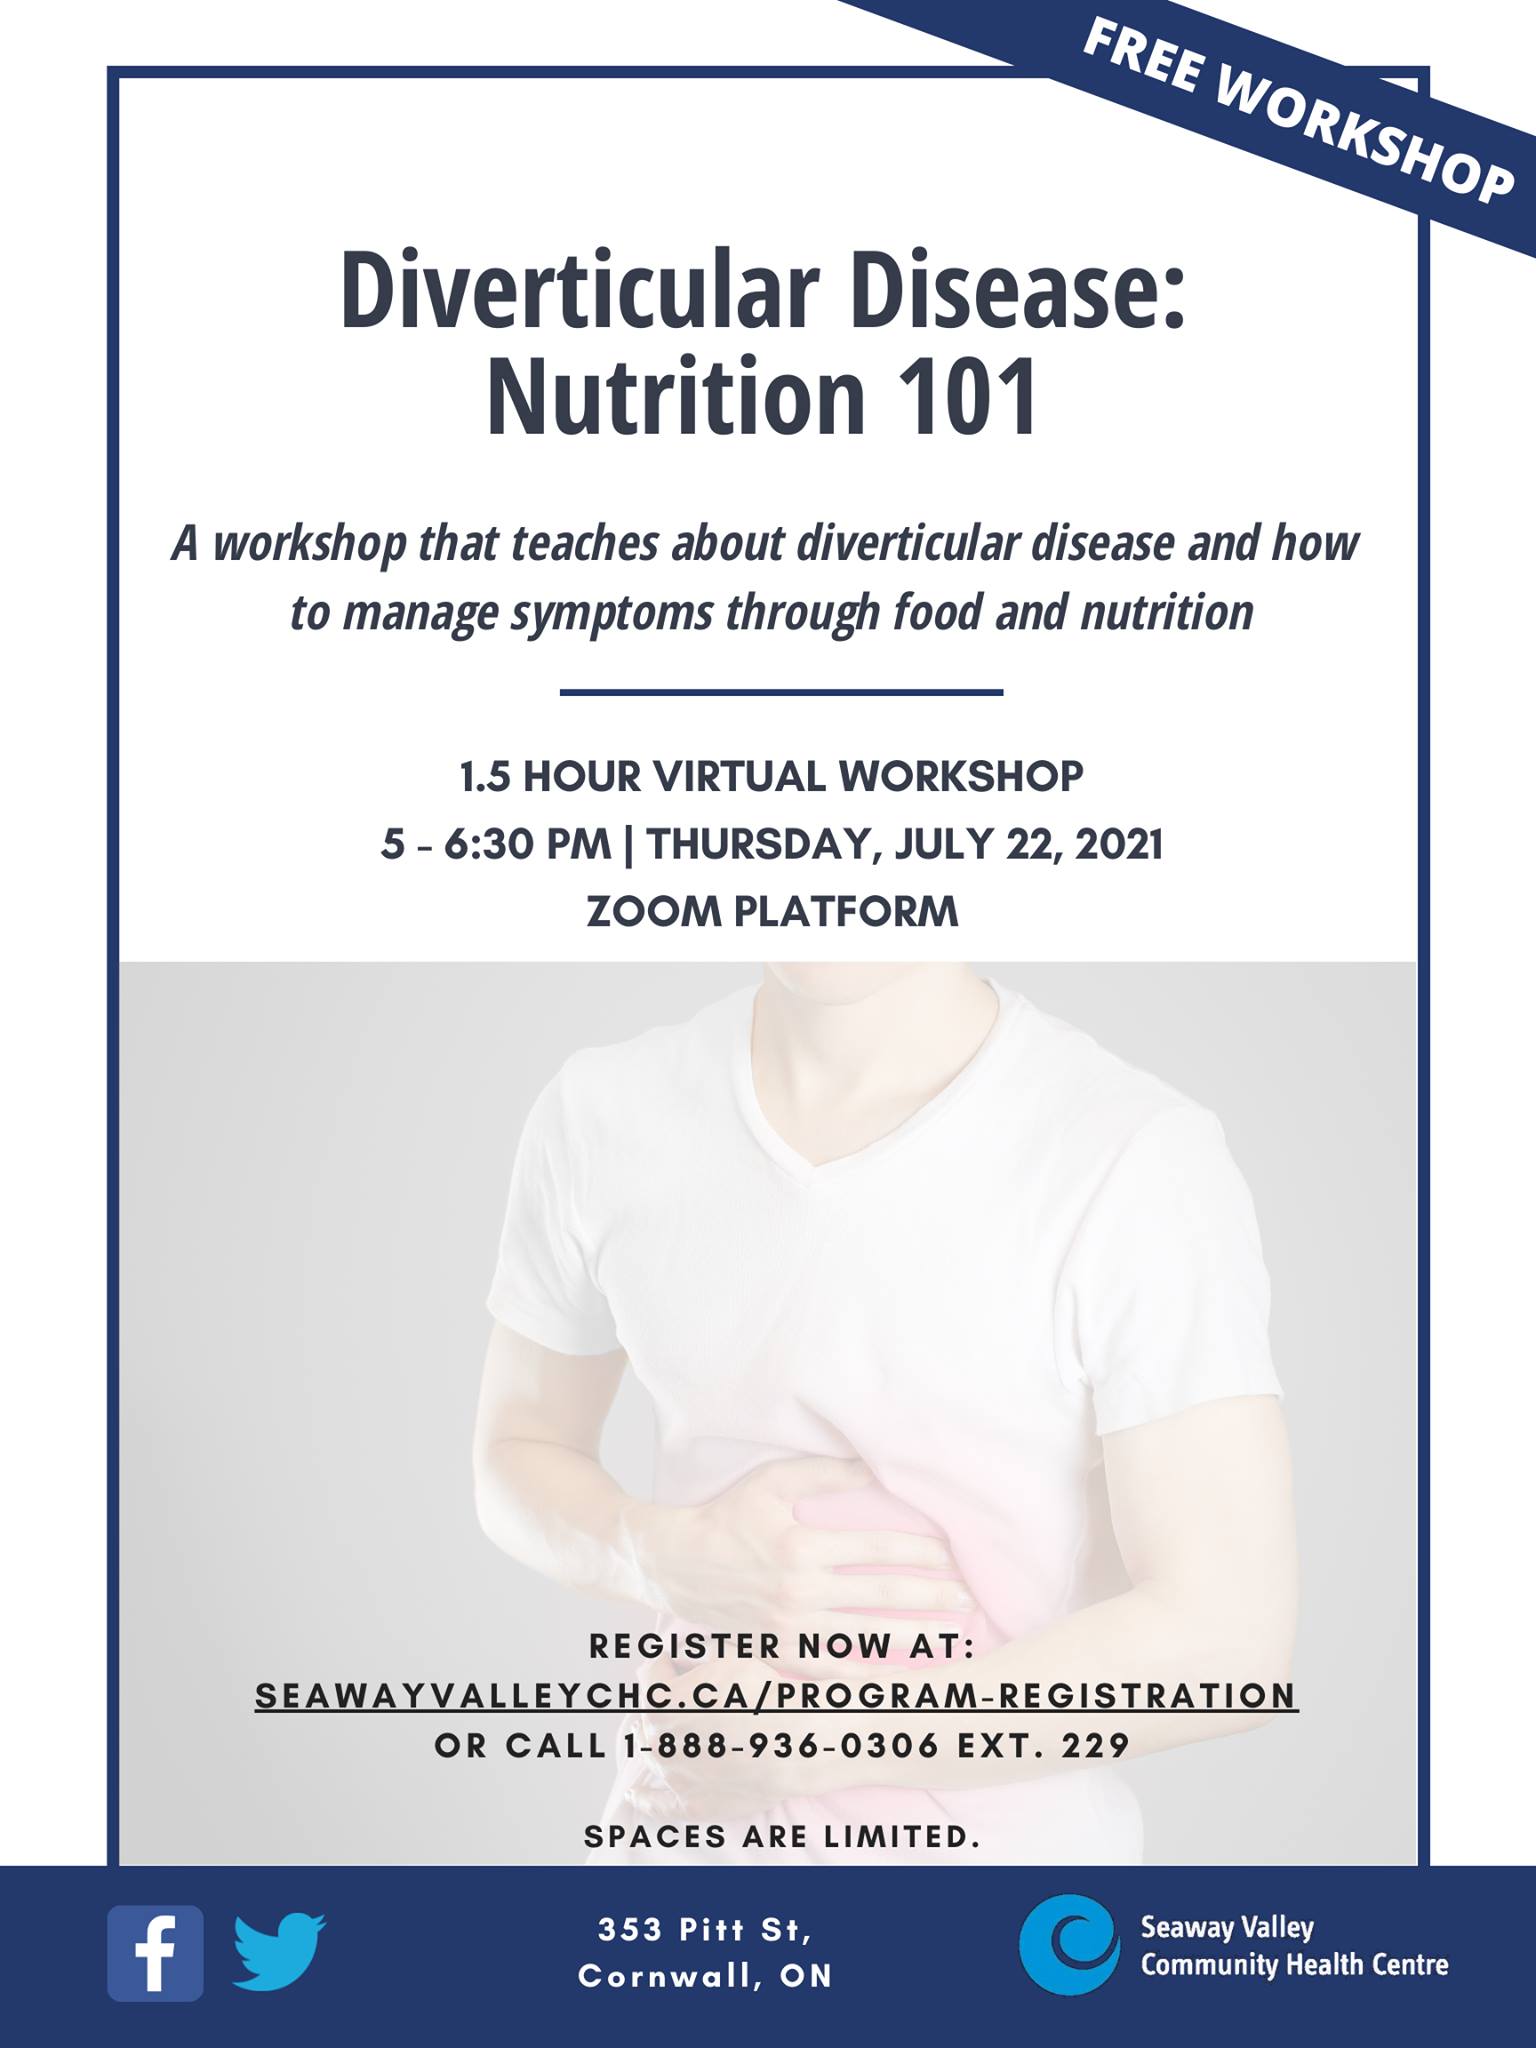 Promotional poster for Diverticular Disease Nutrition 101 Workshop